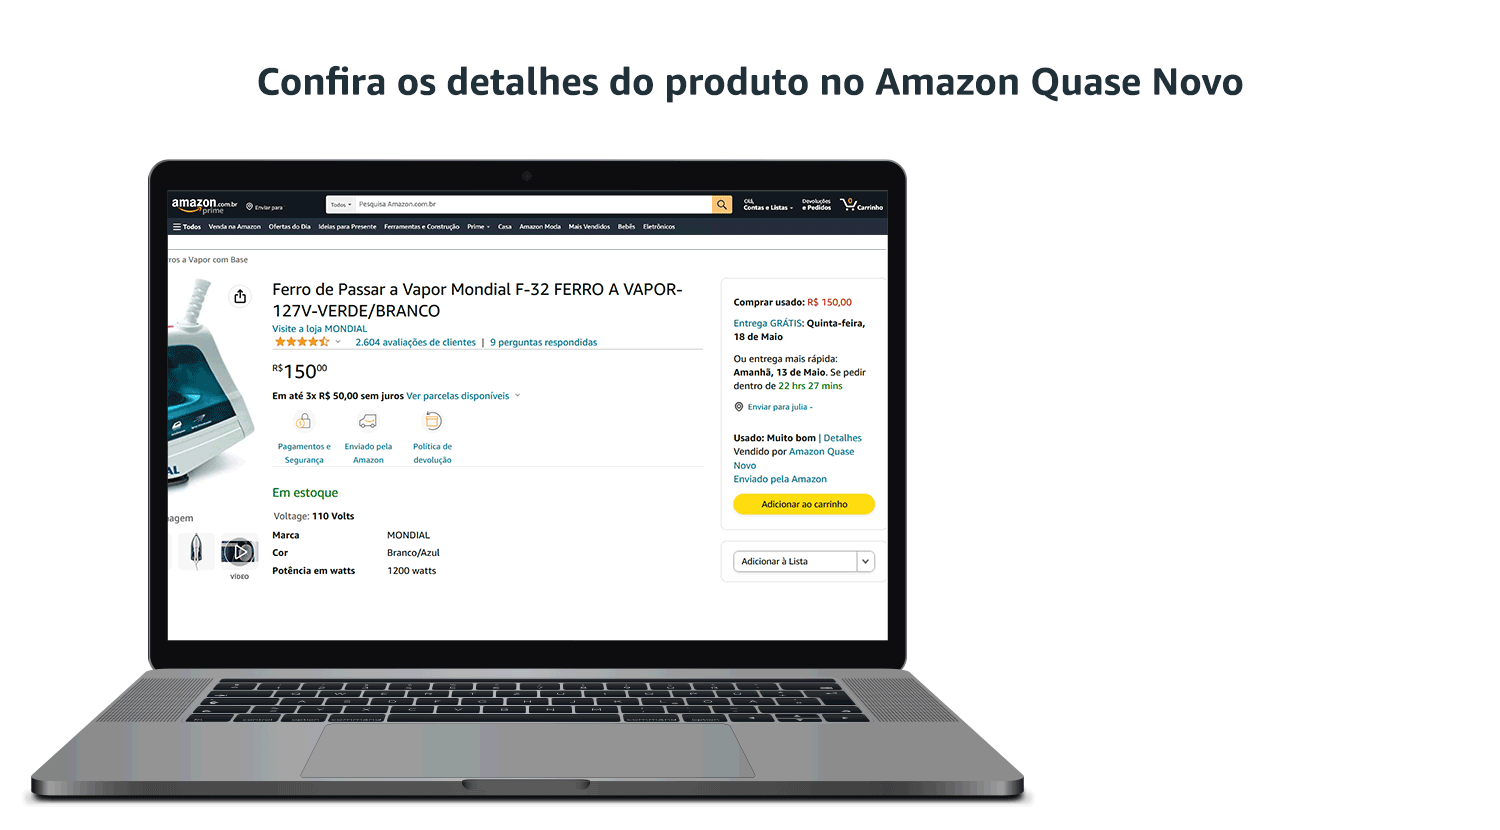 "Amazon quase novo" lançamentos com descontos impressionantes